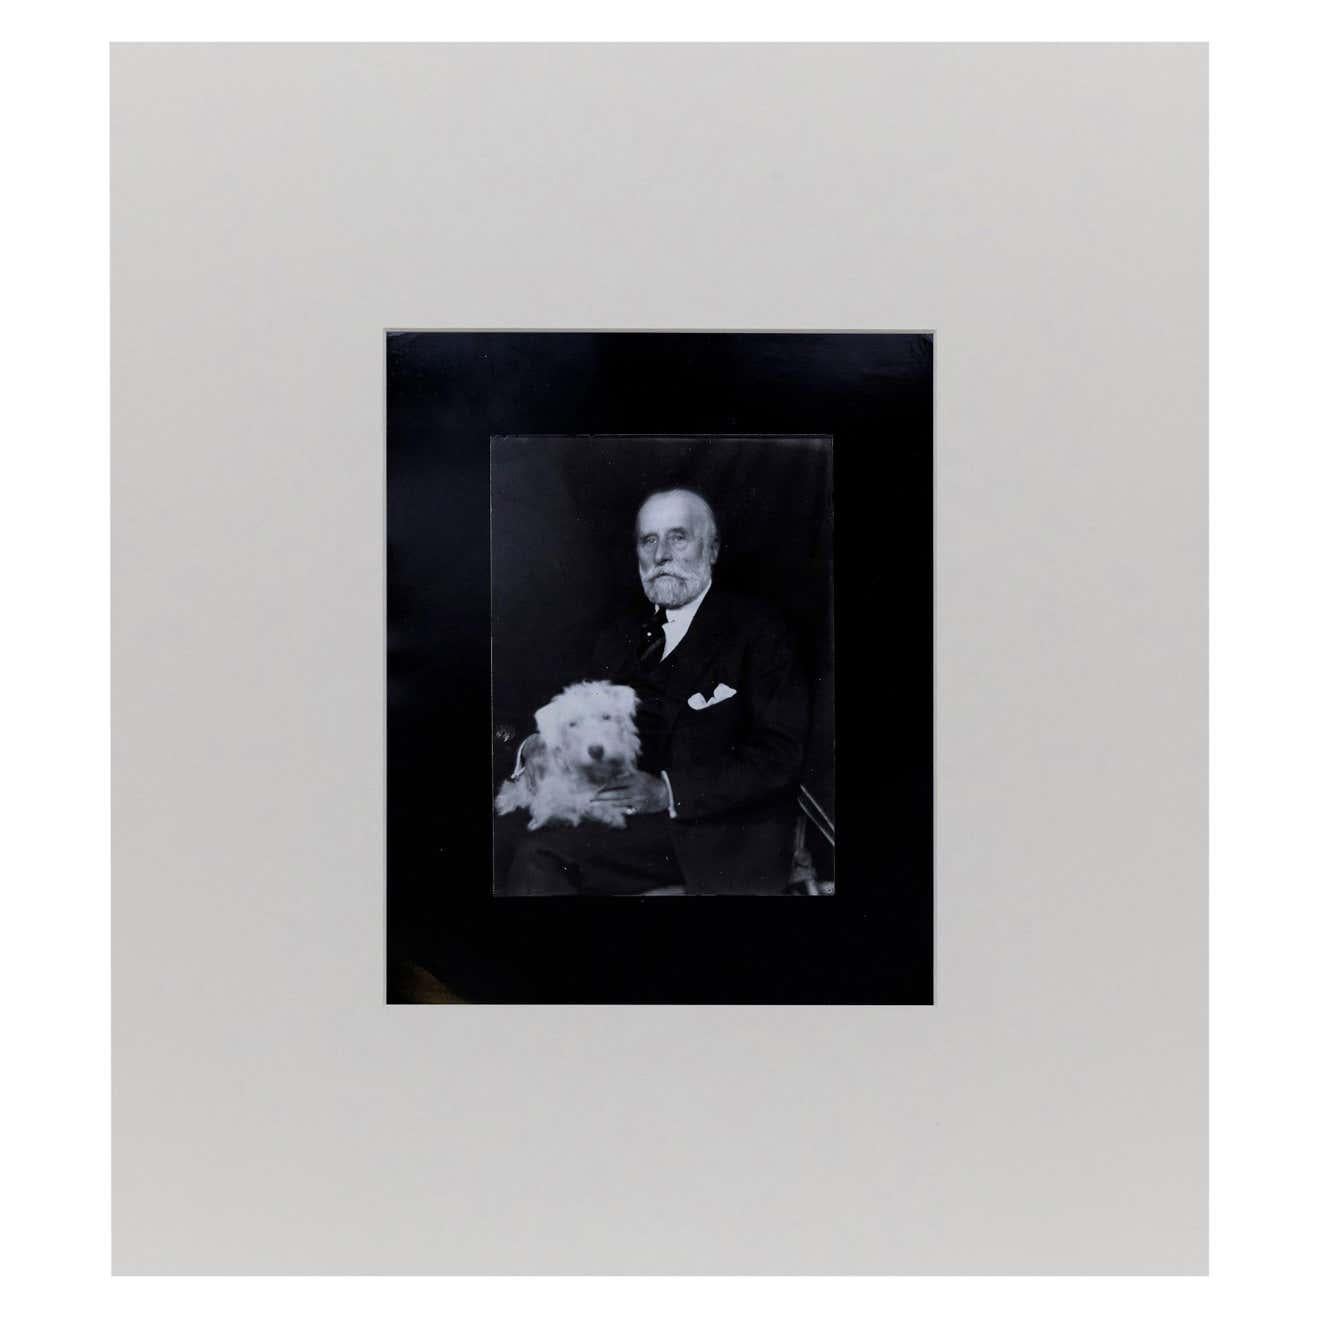 Porträt des französischen Modedesigners Jacques Doucet, fotografiert von Man Ray, um 1926.

Ein posthumer Abzug vom Originalnegativ aus dem Jahr 1977 von Pierre Gassmann.

Gelatinesilberbromid.

Geboren (Philadelphia, 1890 - Paris, 1976) als